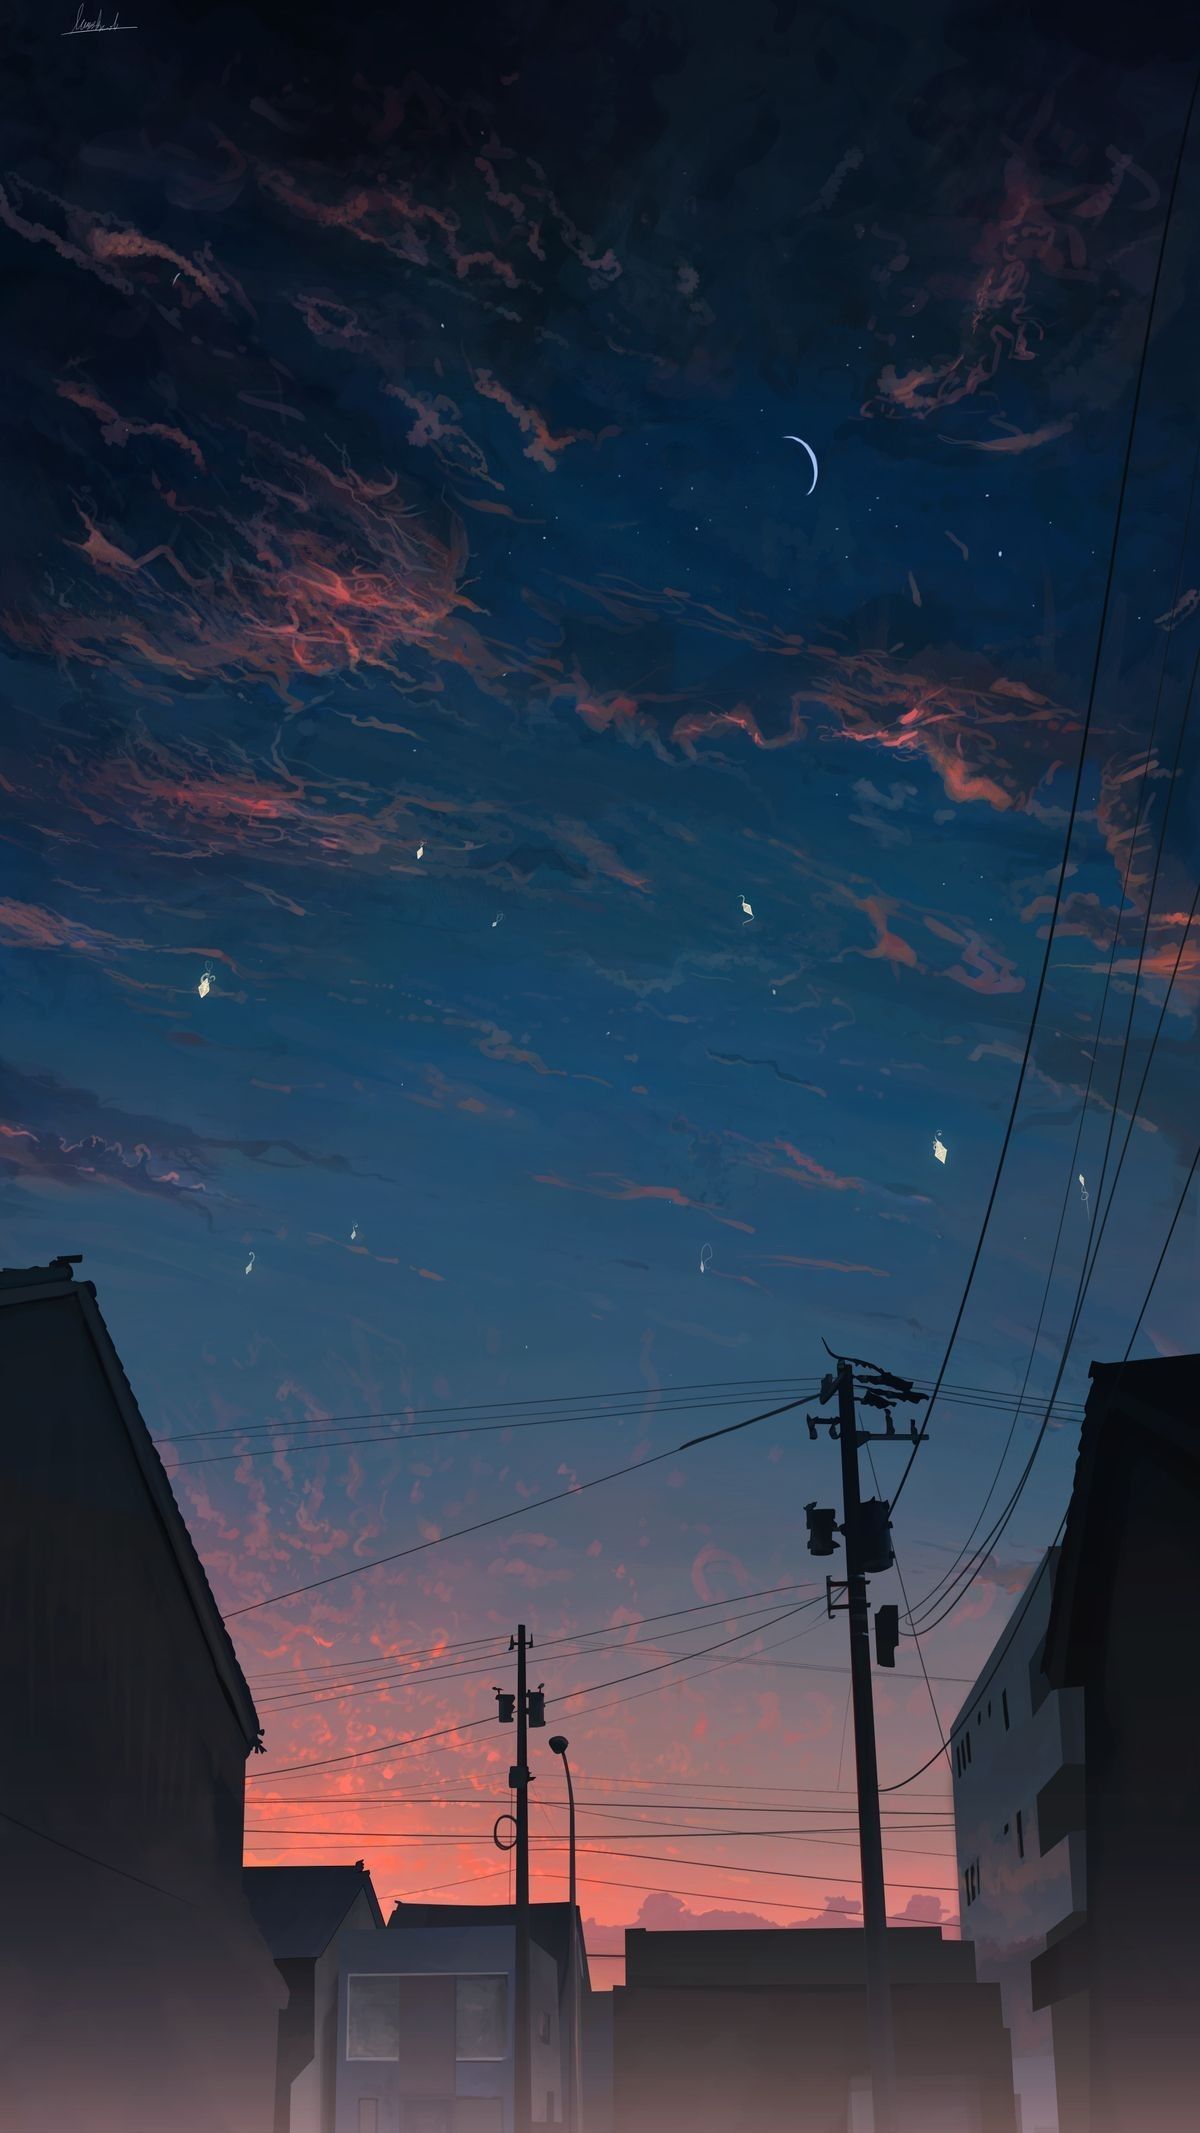 Anime #sky #Wallpaper #View #Sunset #background.. 風景の壁紙, 美しい壁紙, 風景